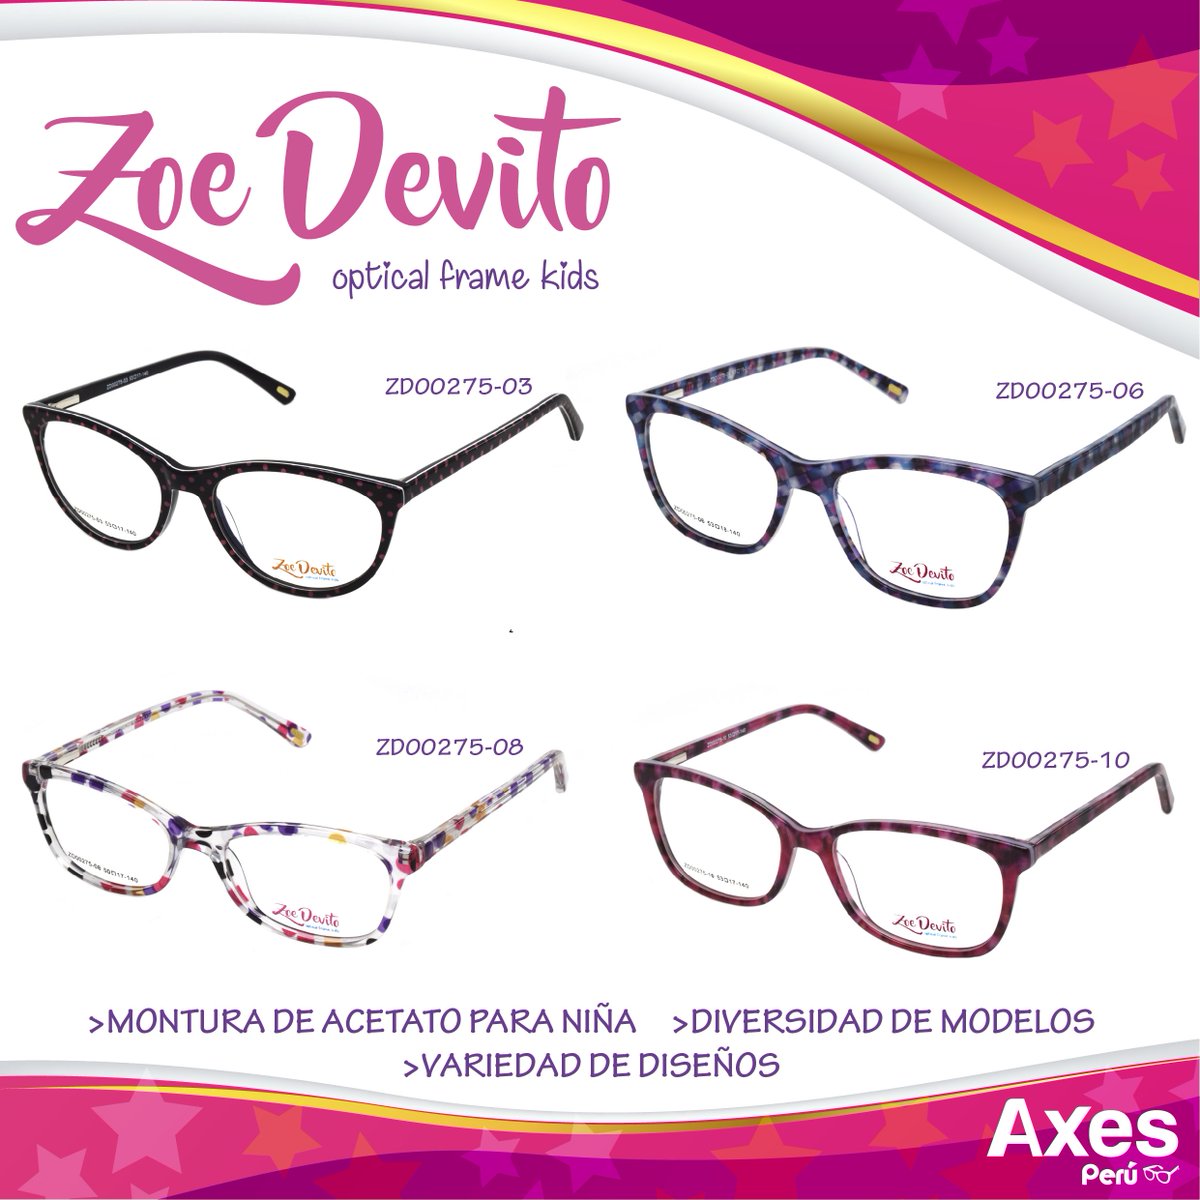 Axes Perú on Twitter: "En #AxesPerú tenemos monturas para niña de la marca #ZoeDevito con marcos resistentes y con para las princesas de casa. 👓👧👓👧👓👧👓 ▻Visita nuestro Catálogo Virtual en